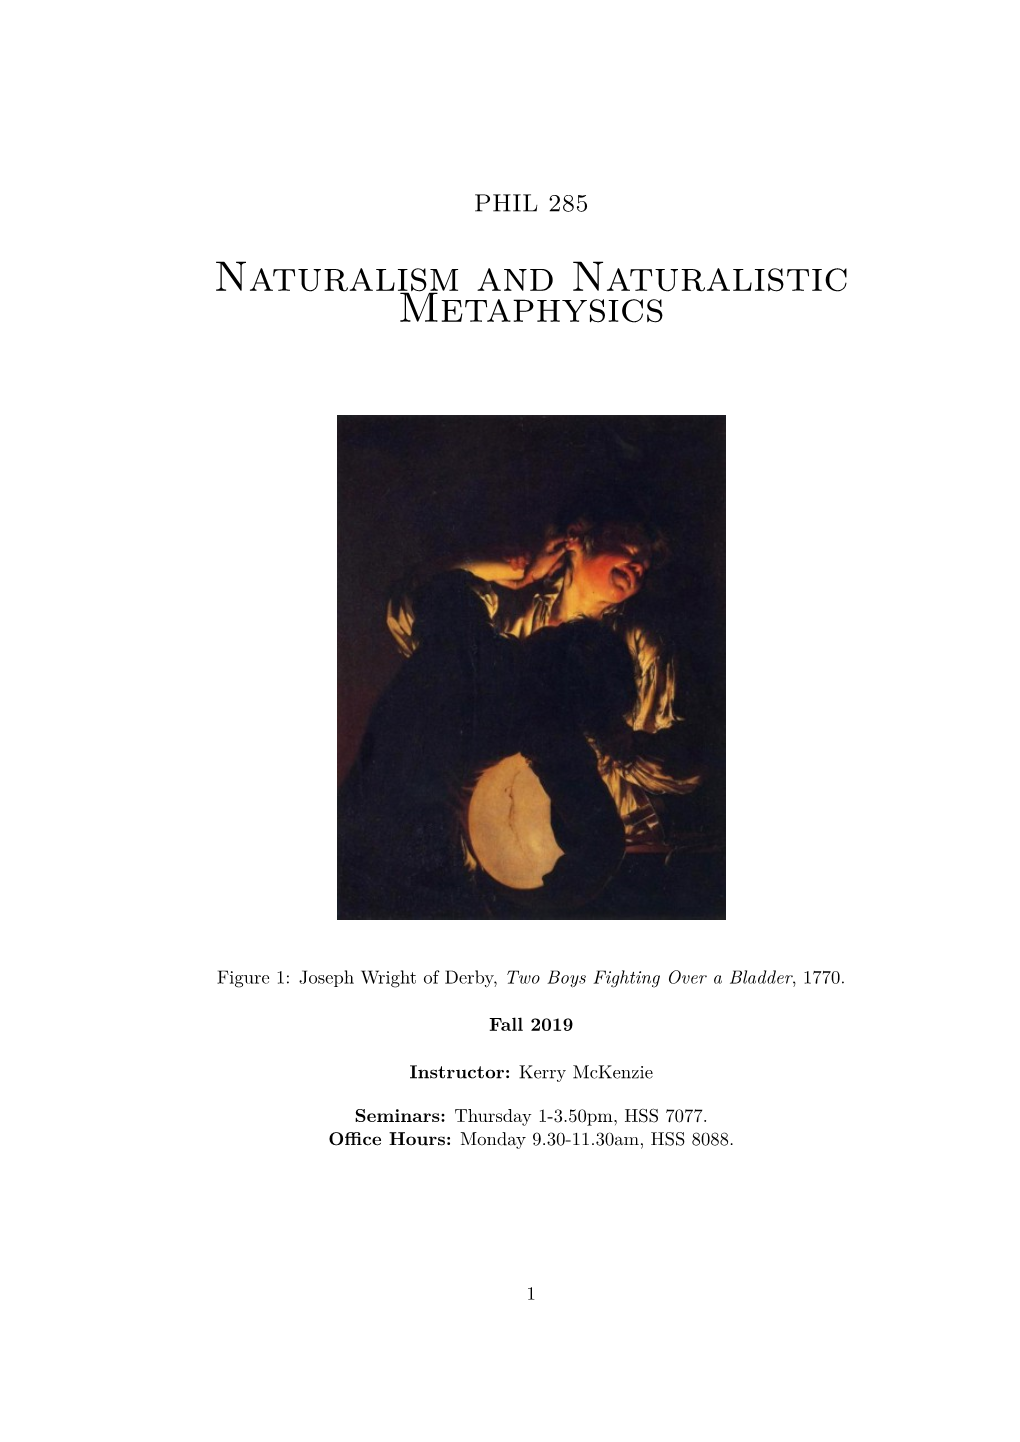 Naturalism and Naturalistic Metaphysics